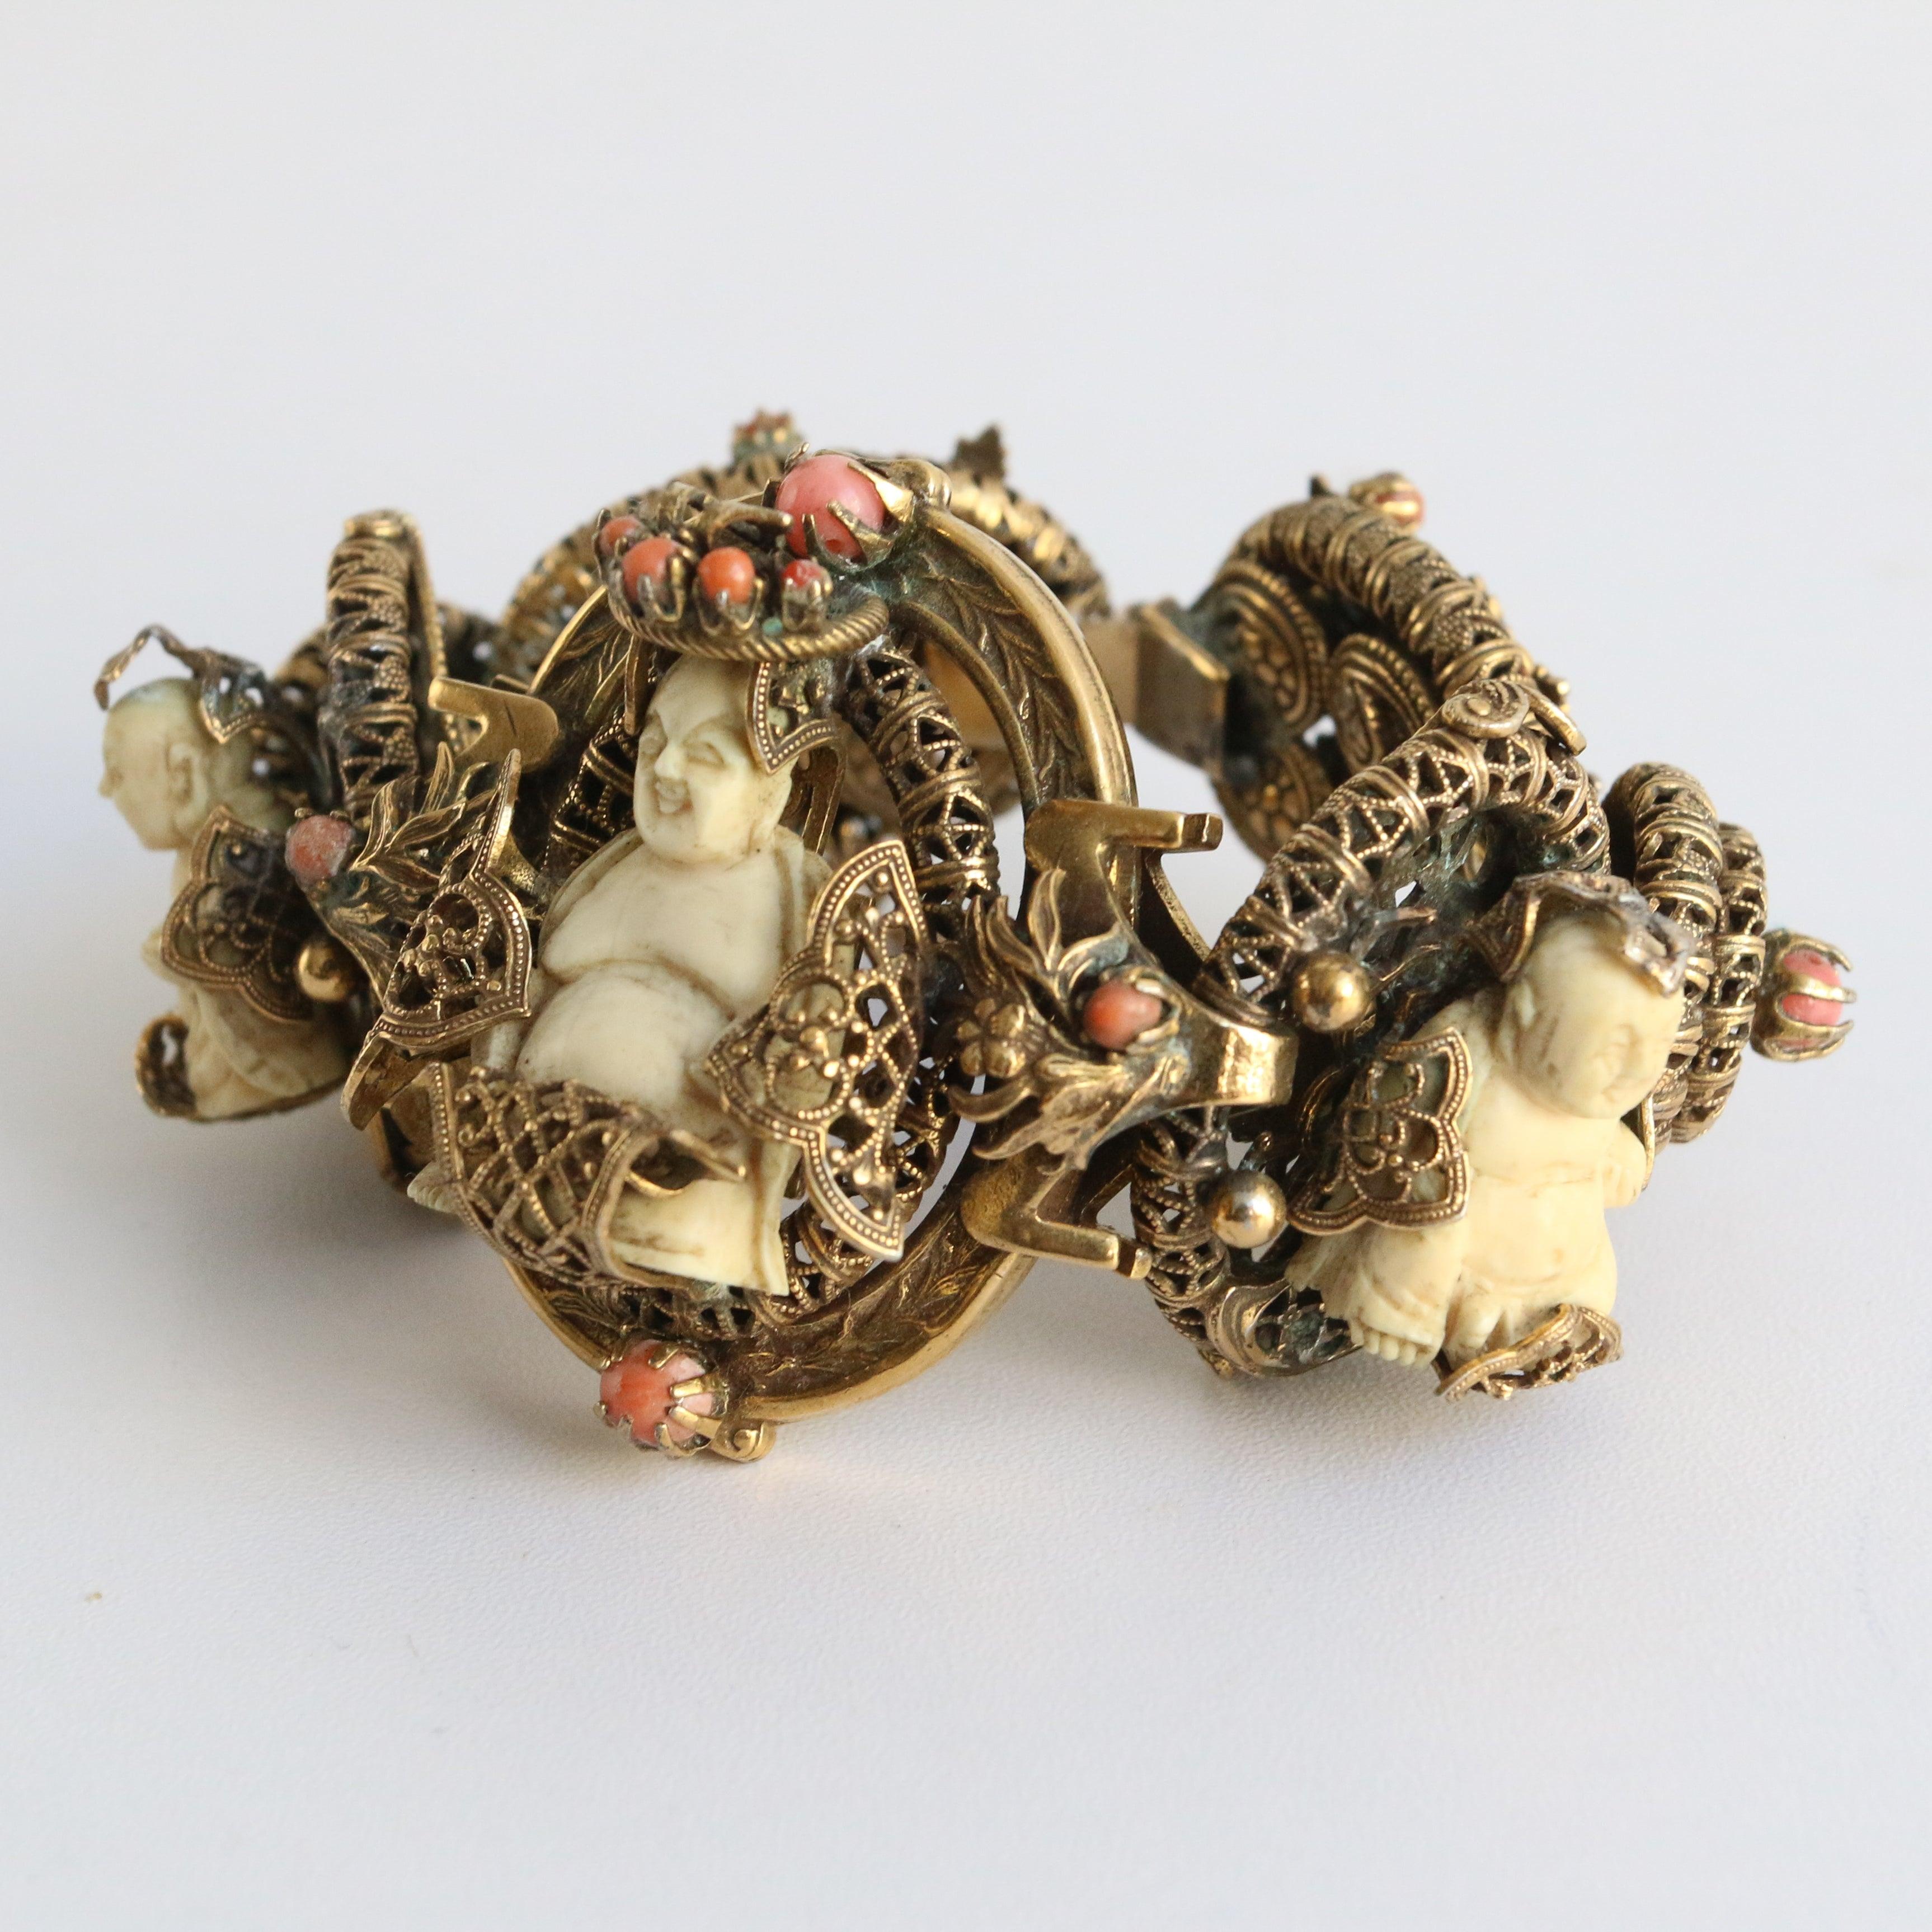 Ce bracelet en laiton filigrané des années 1920, orné de coraux en peau d'ange sertis et de bouddhas bovins sculptés, dans un cadre Trikaya, est une pièce rare. Les cinq bases reliées entre elles sont ornées de motifs et de dessins en filigrane et